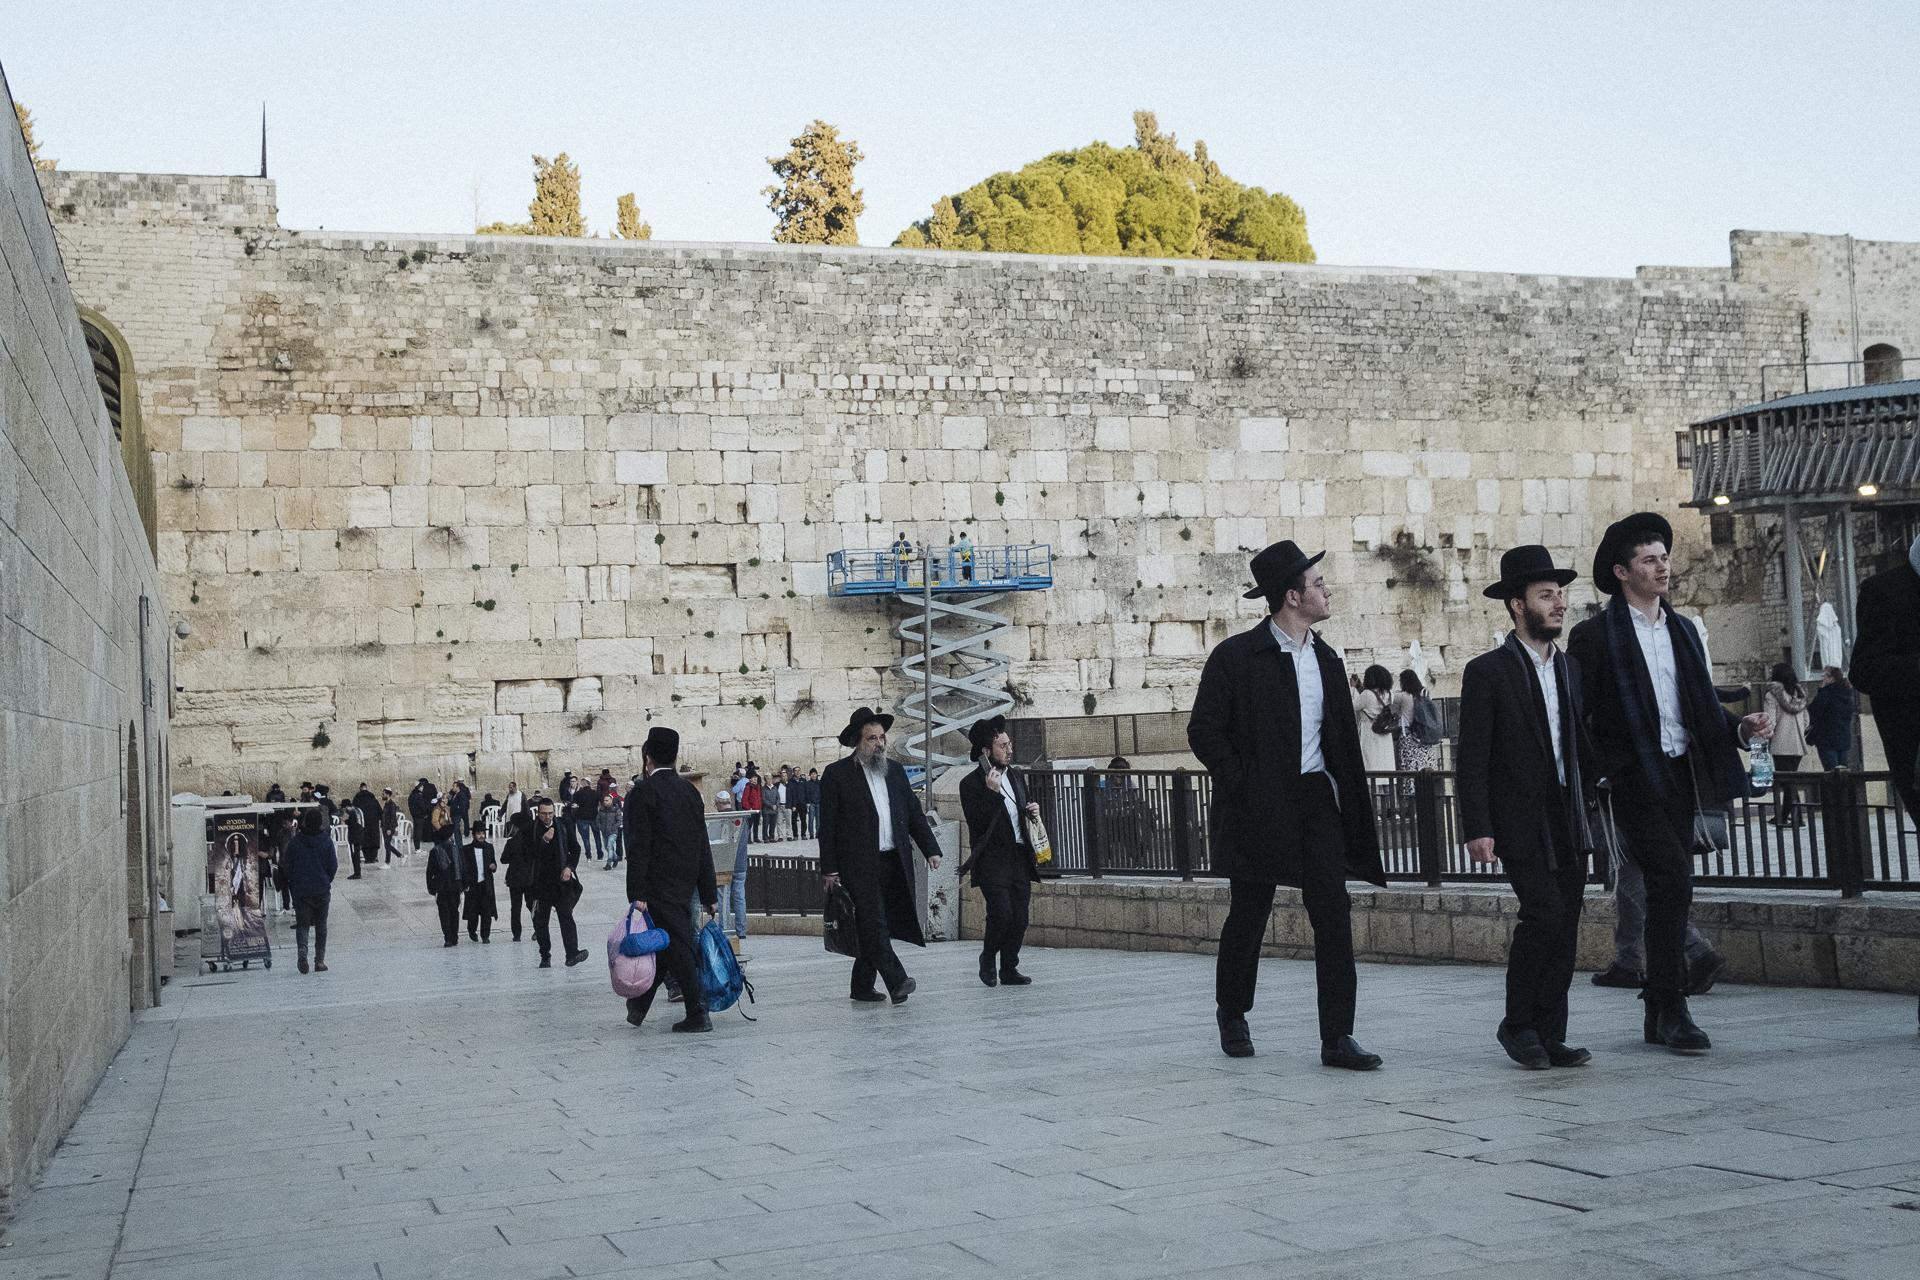 Au nom de tous les Saints - Western Wall. Jerusalem, February 12, 2020.
Mur des...